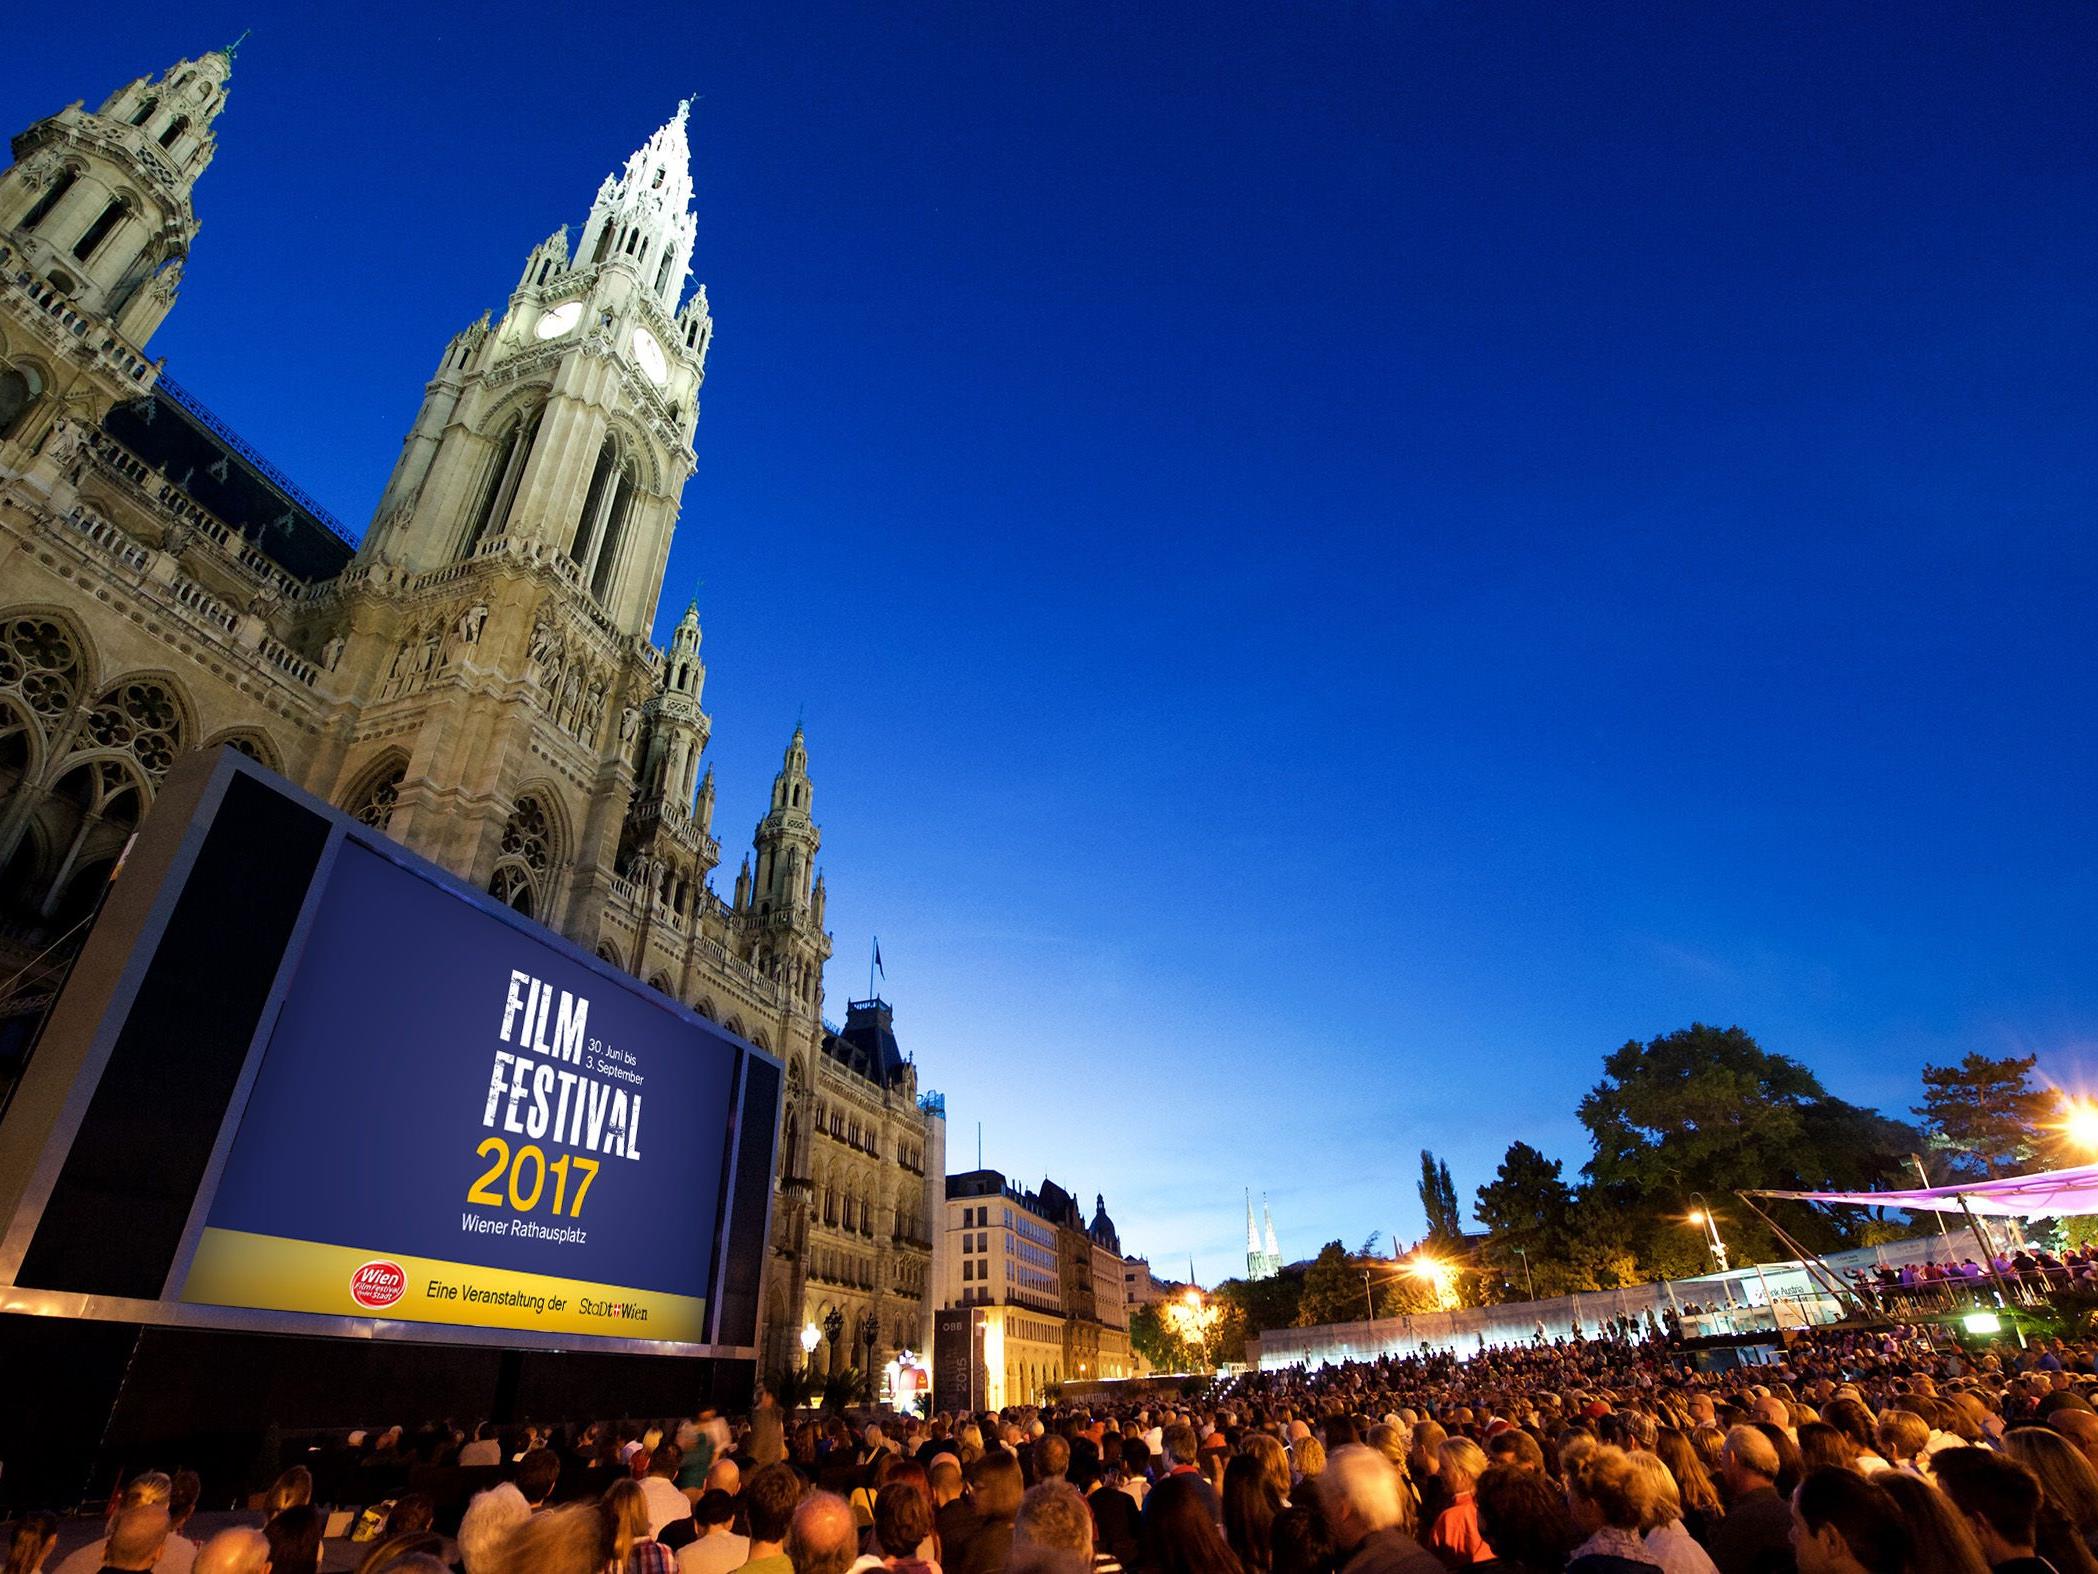 Das Film Festival am Rathausplatz ist alle Jahre wieder ein Besuchermagnet